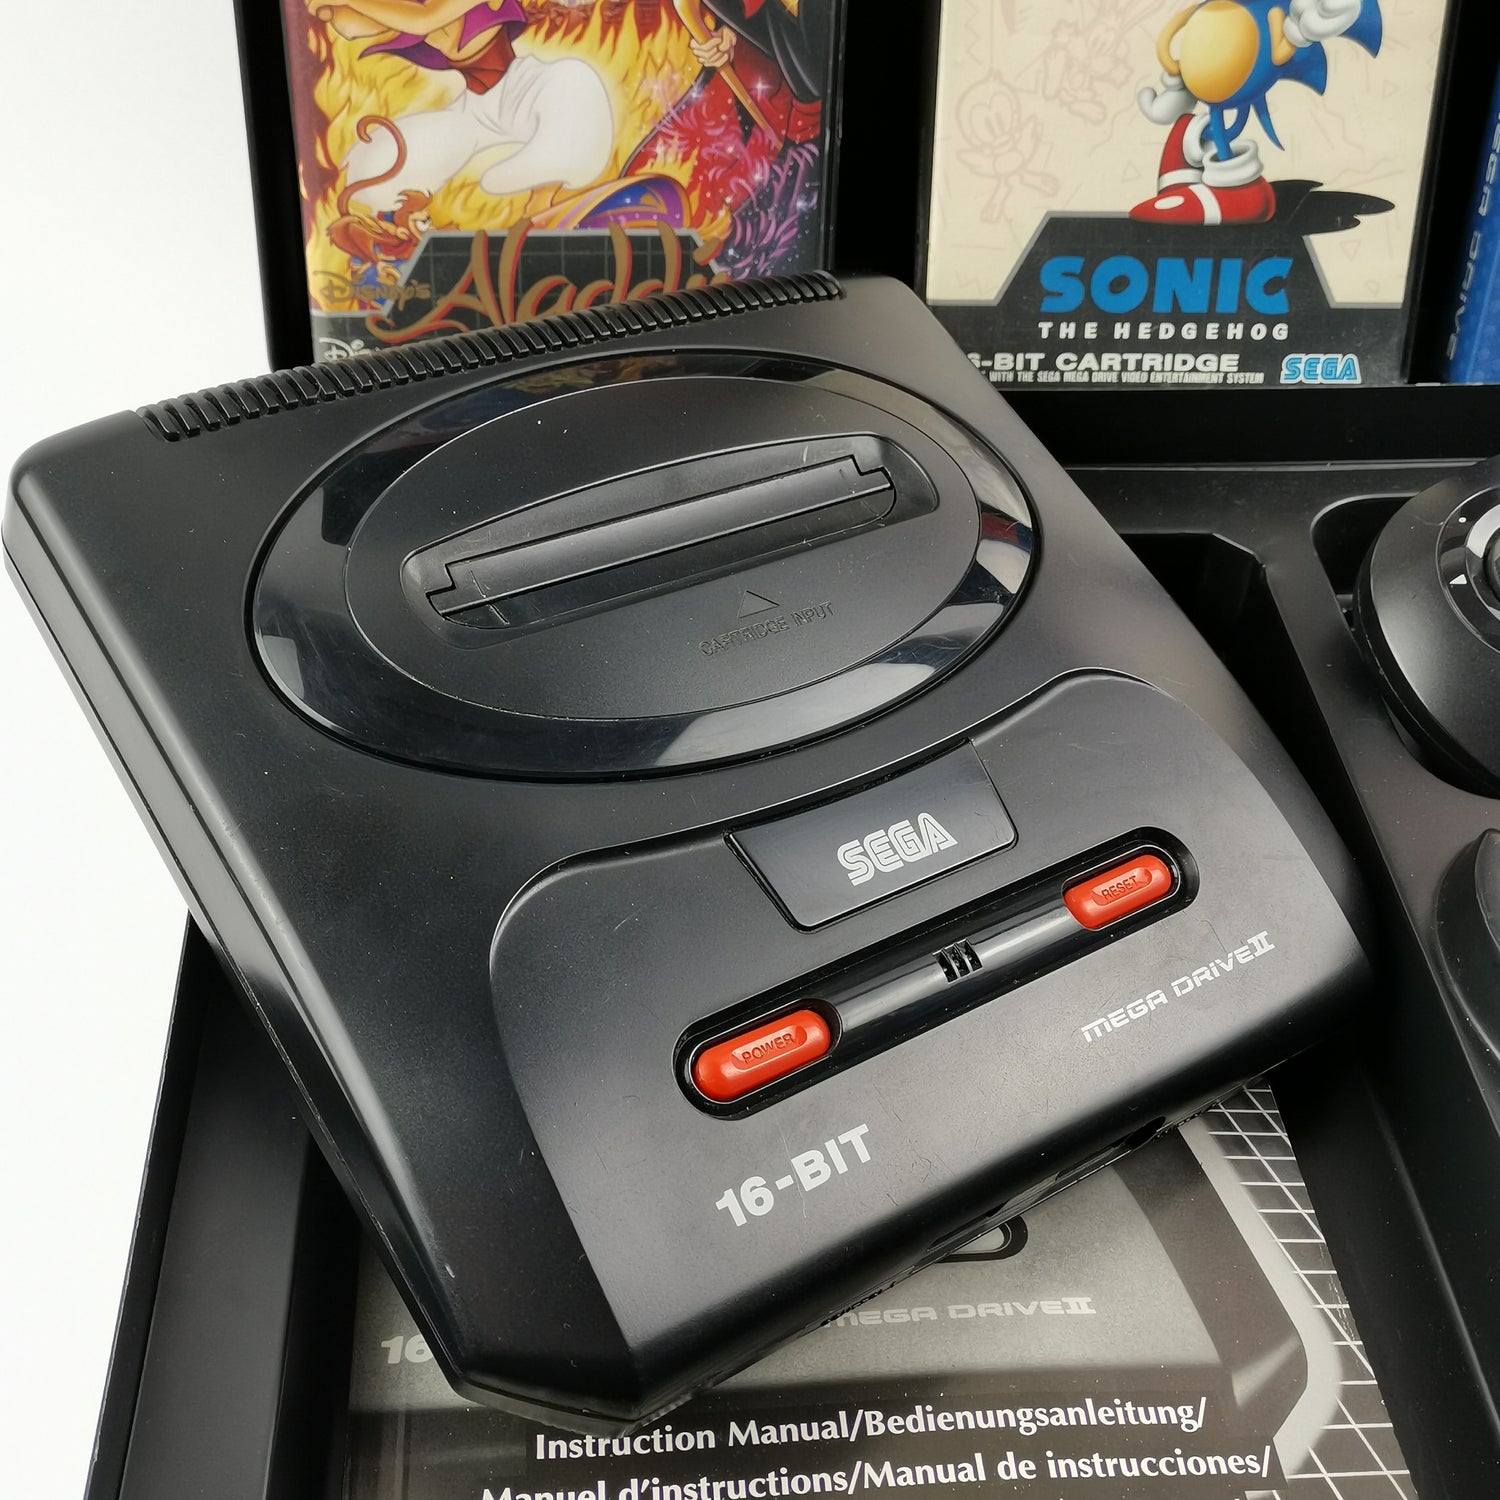 Sega Mega Drive II 2 mit 2 Controller , Strom Kabel, 4 Spiele und Koffer